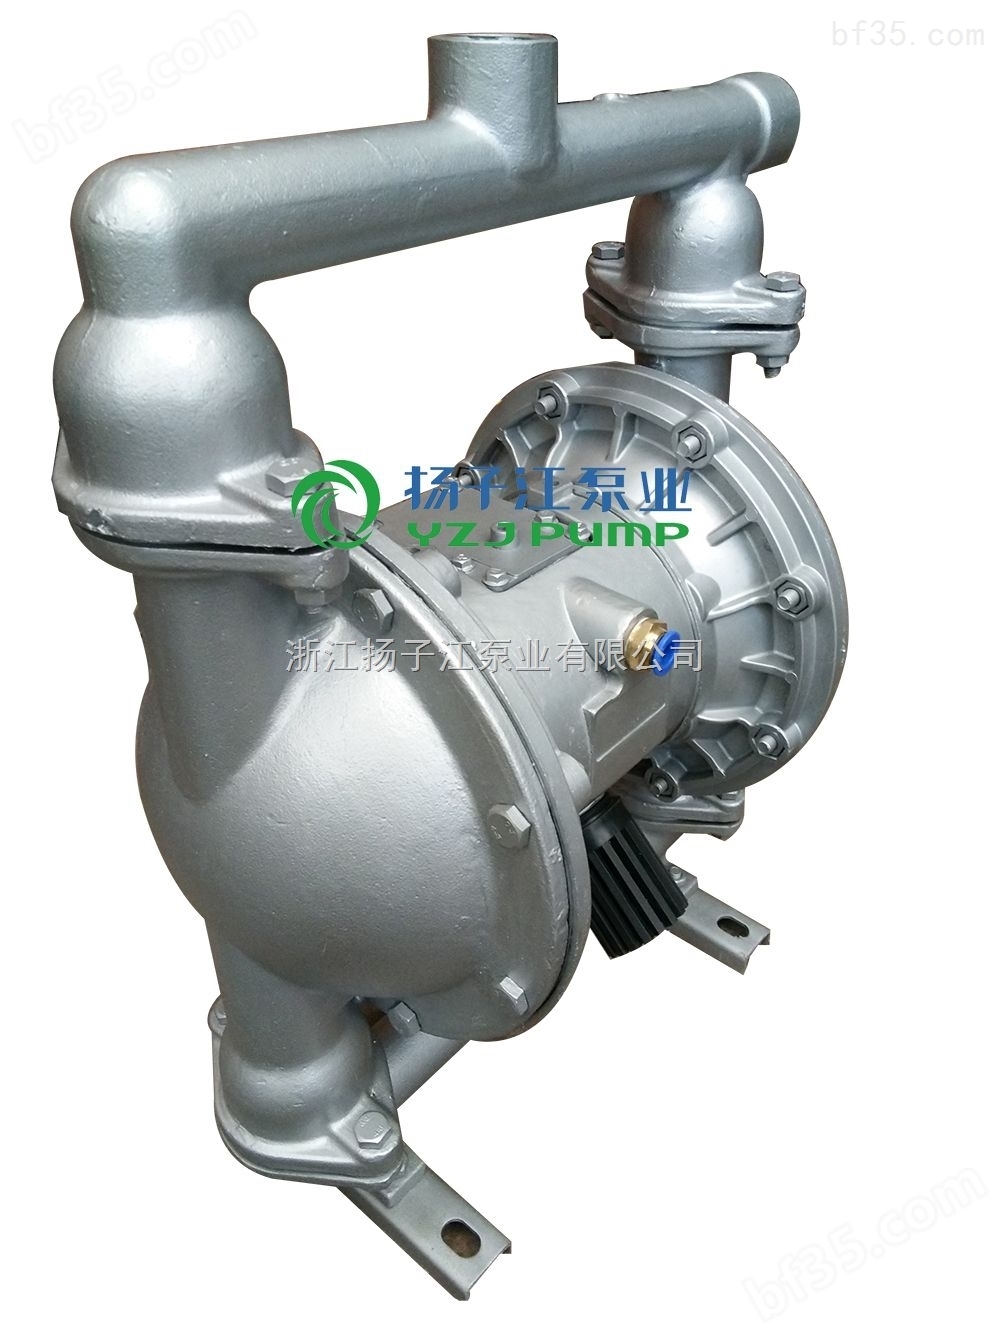 第三代气动隔膜泵QBK-50铝合金 鞋厂胶水泵 胶水喷涂泵